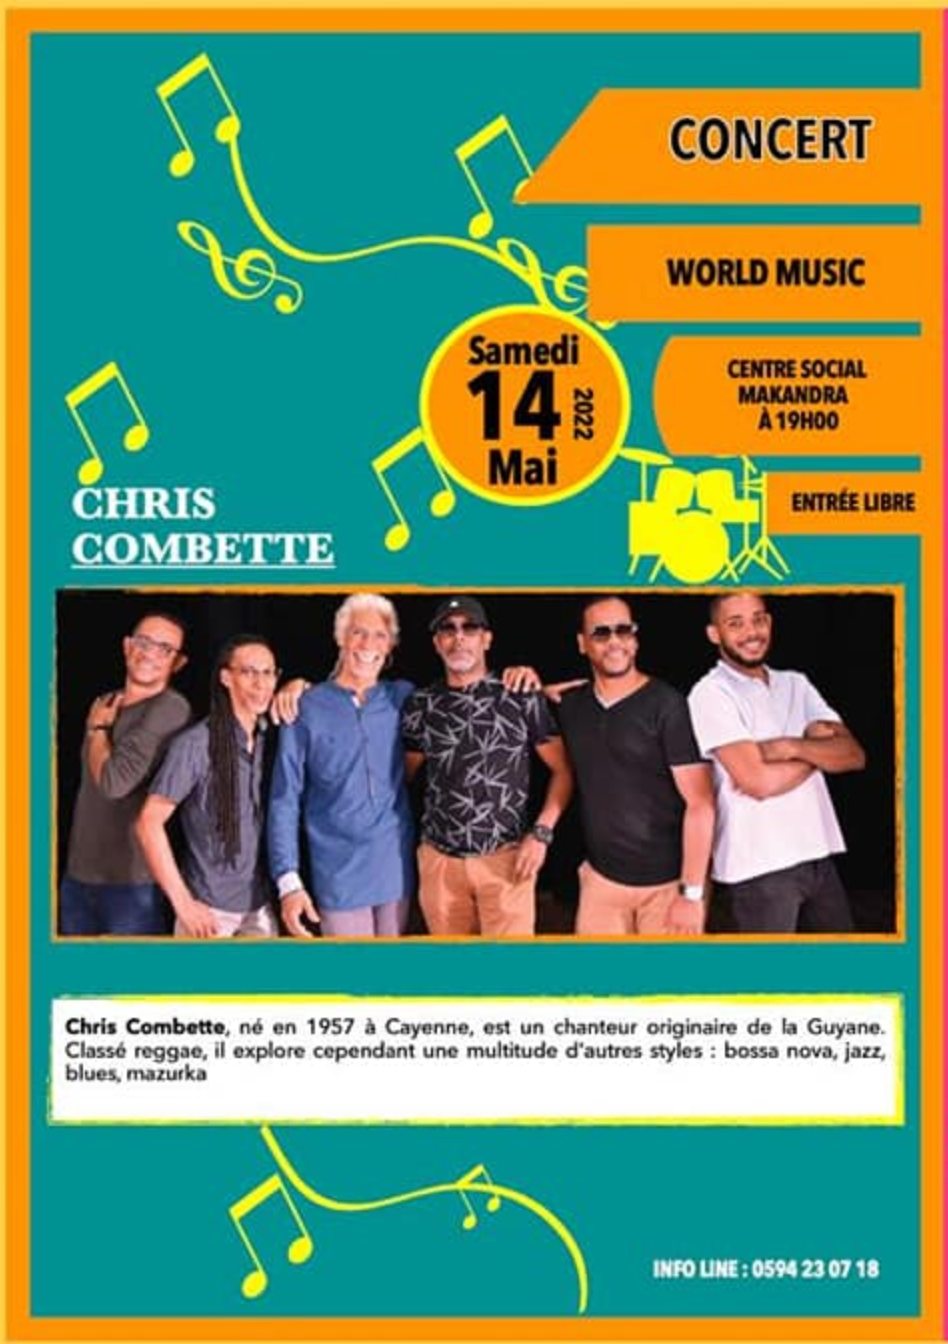 Concert Chris Combette le samedi 14 mai au centre Makandra de Mana